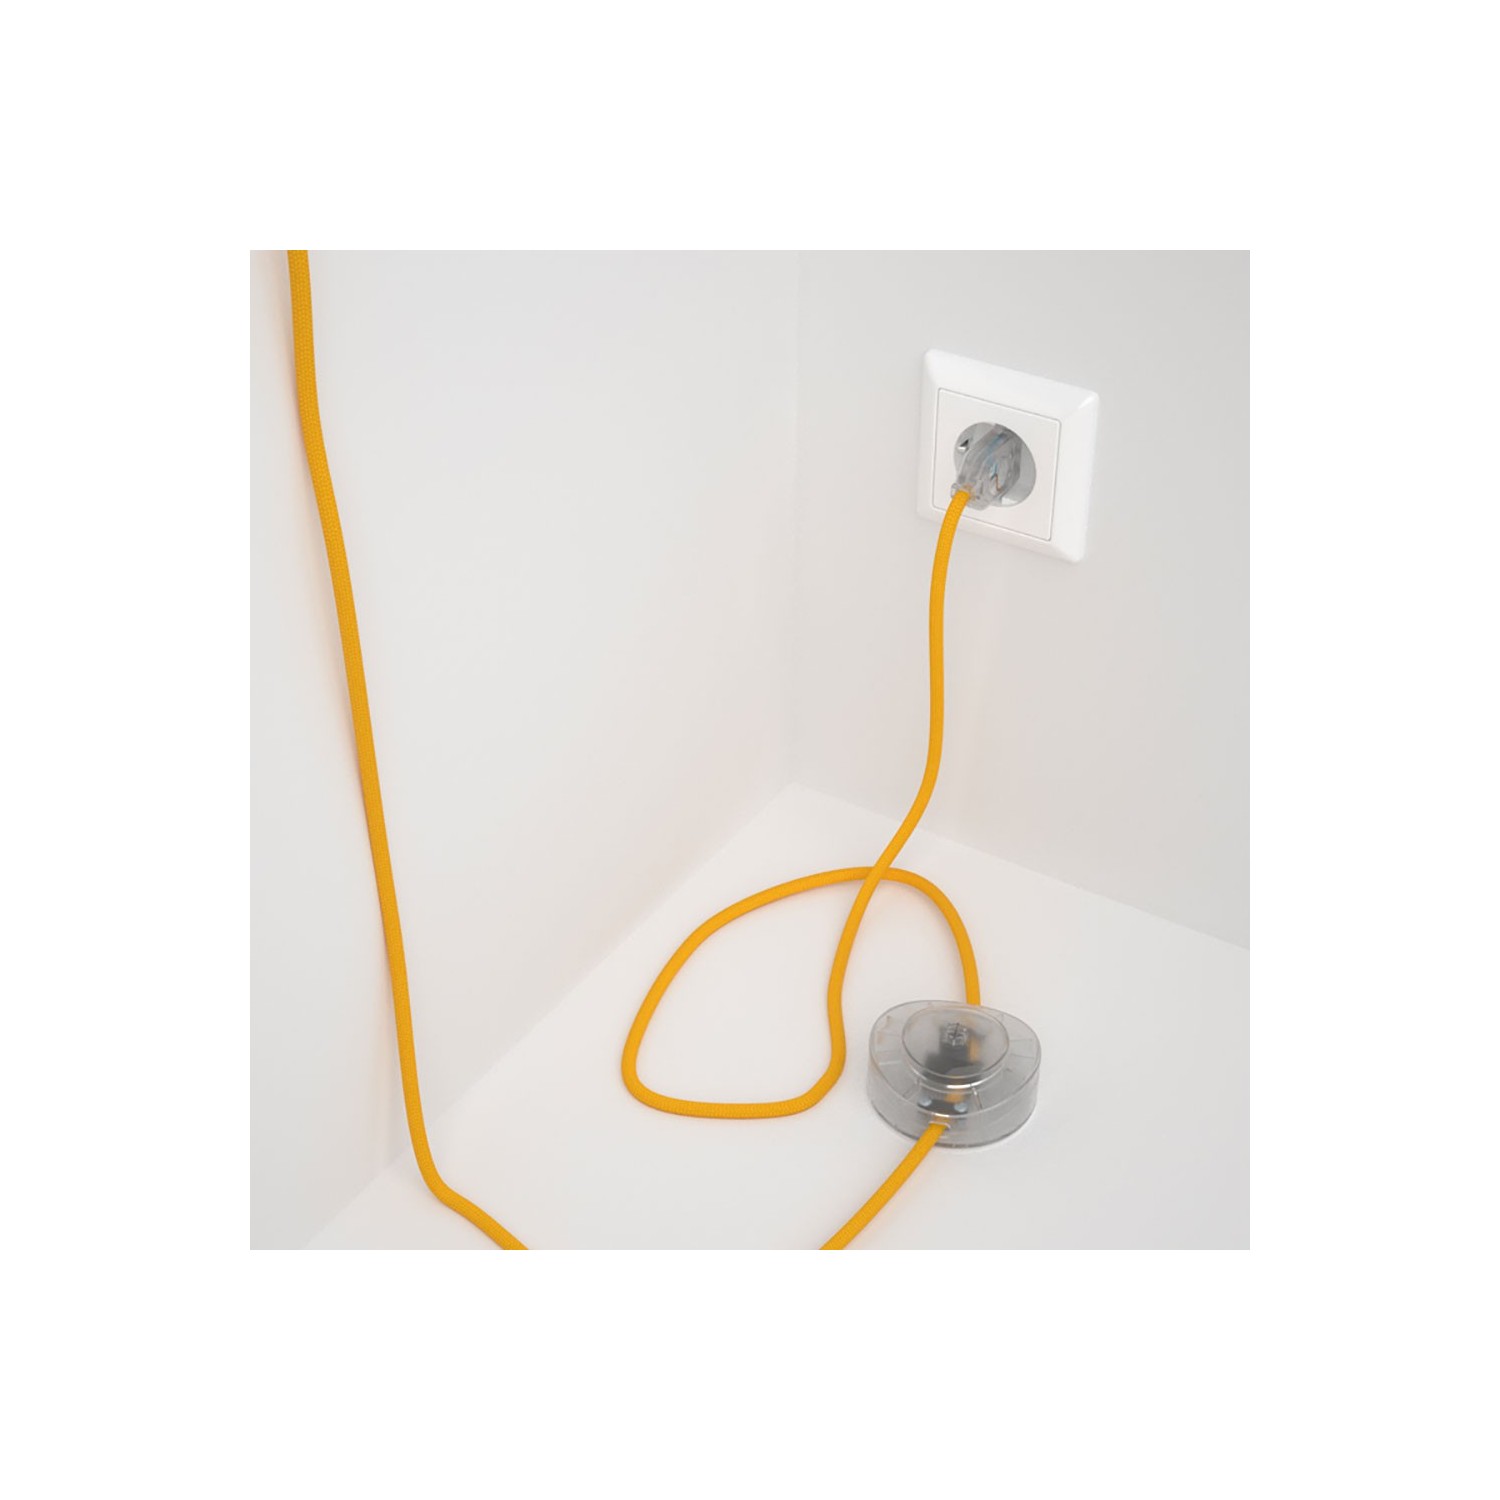 Strijkijzersnoer set RM10 geel viscose 3 m. voor staande lamp met stekker en voetschakelaar.